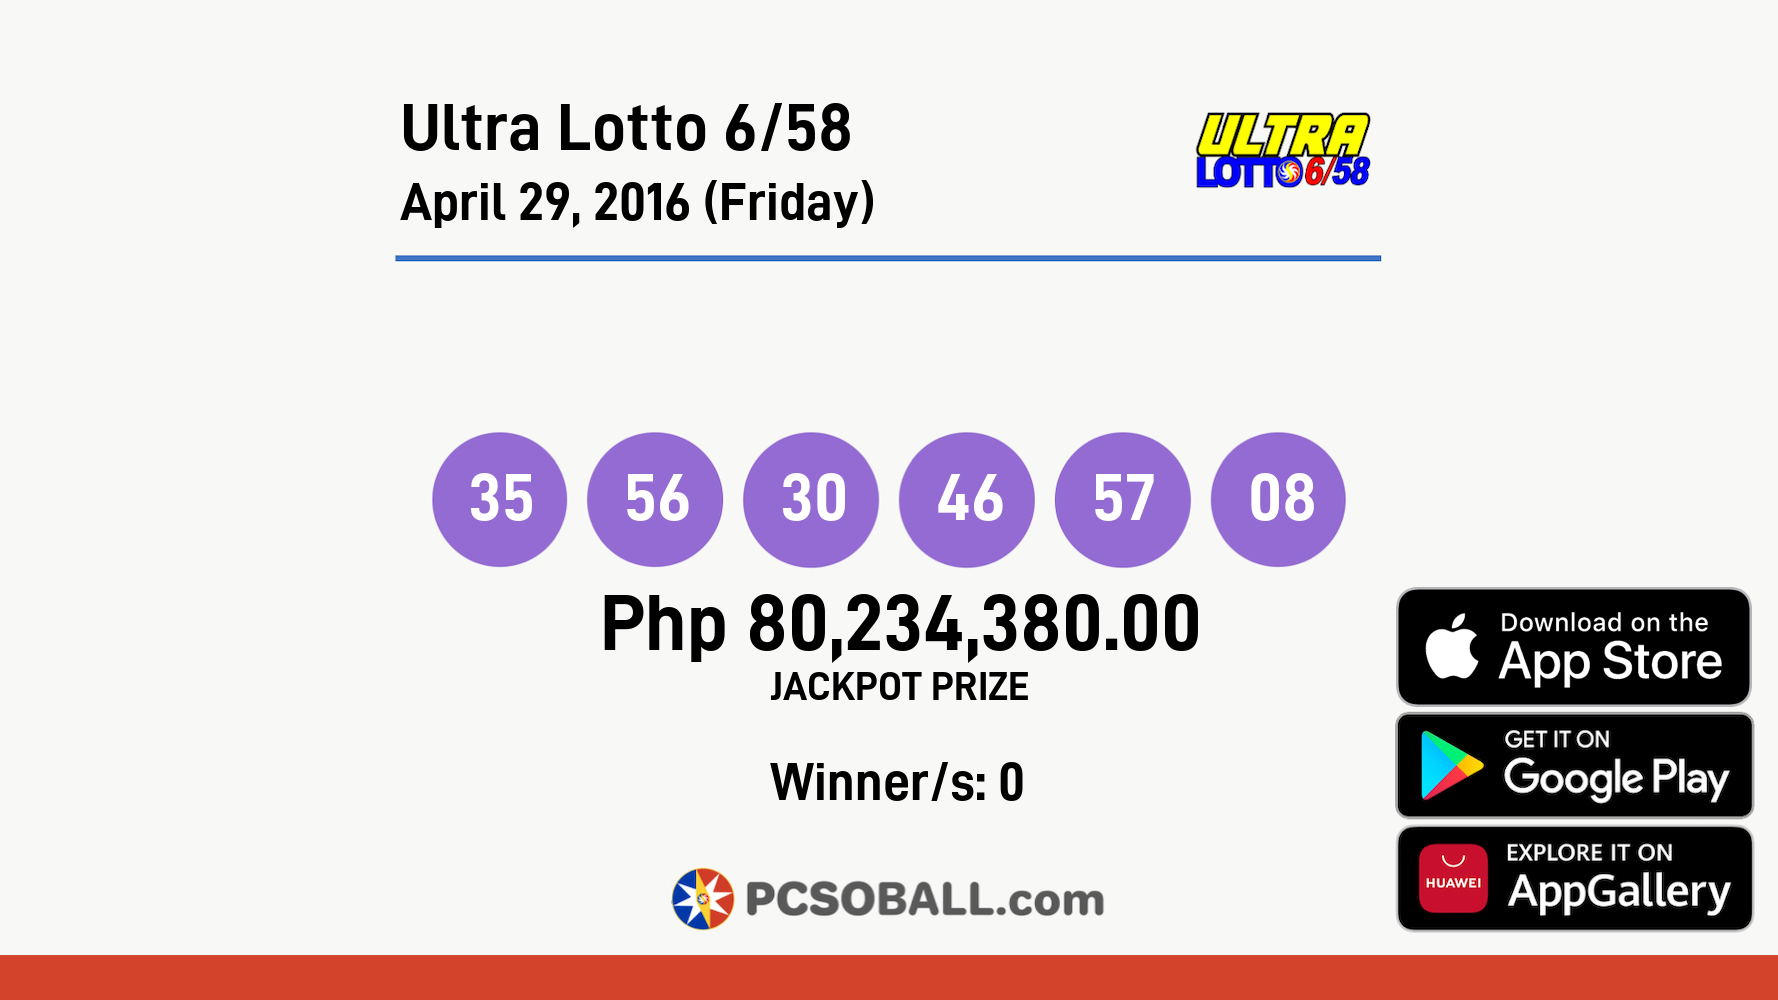 Ultra Lotto 6/58 April 29, 2016 (Friday) Result